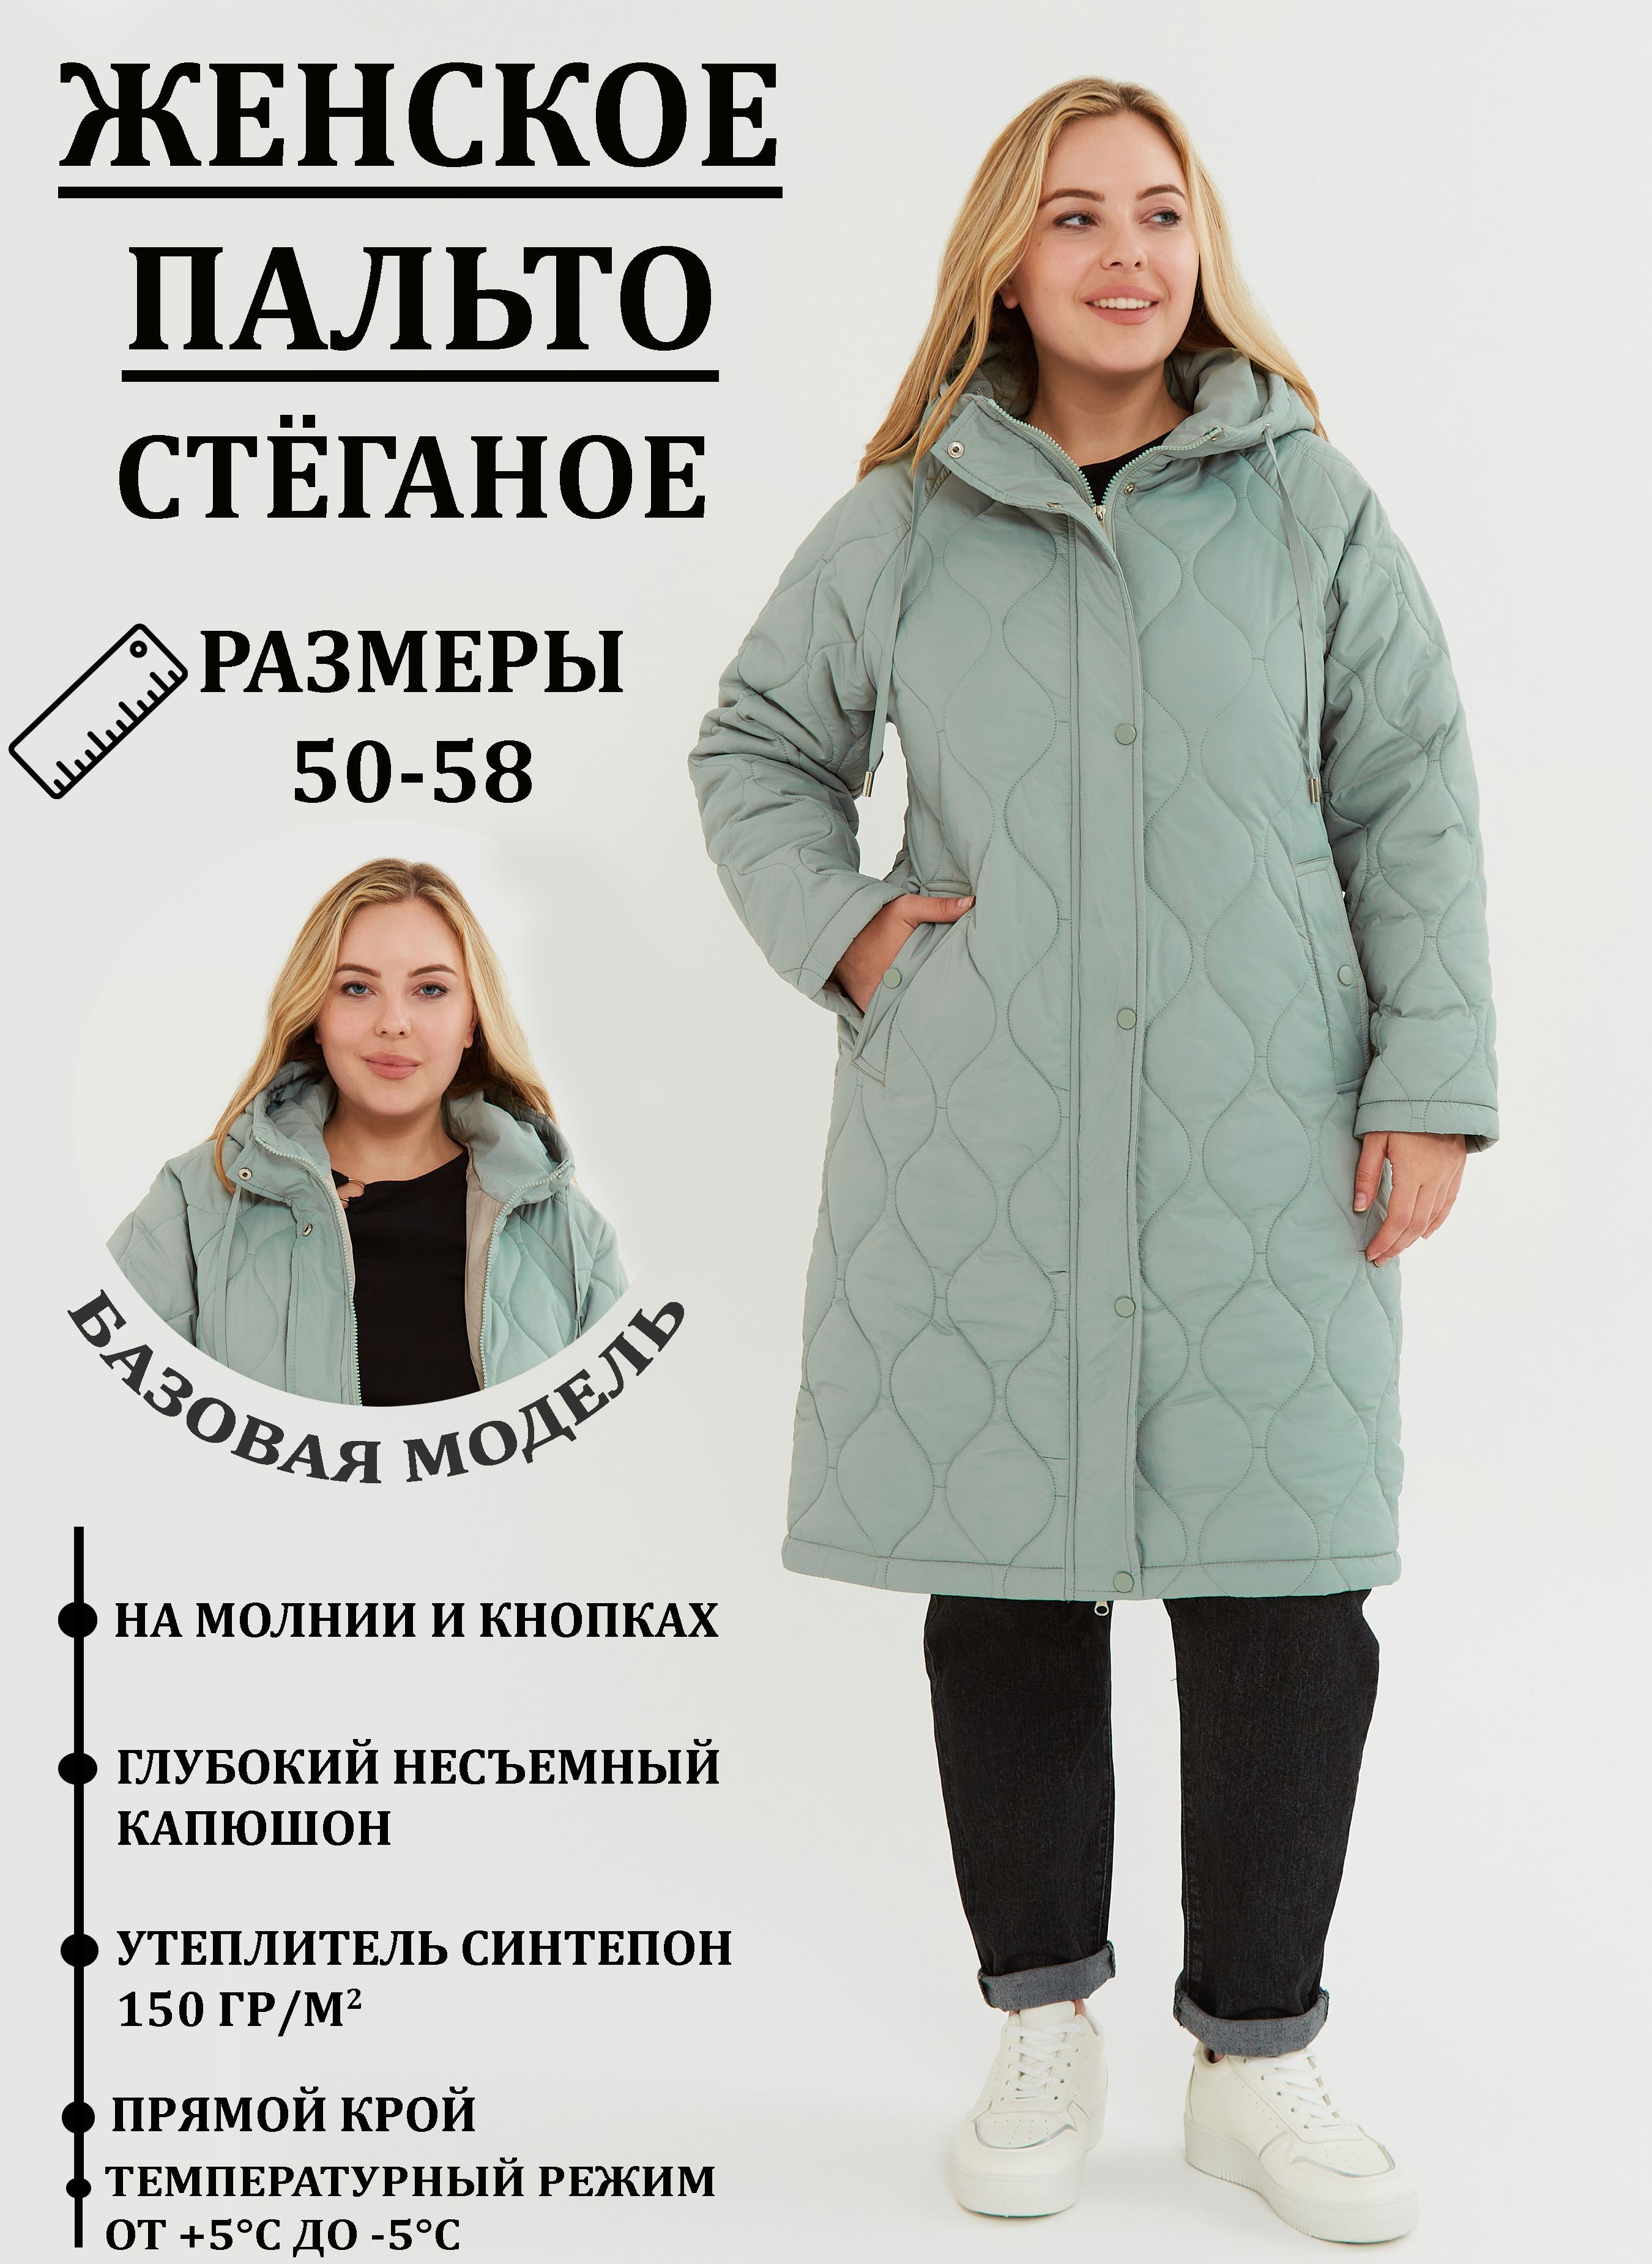 Модные шубы осень-зима 2018-2019 года